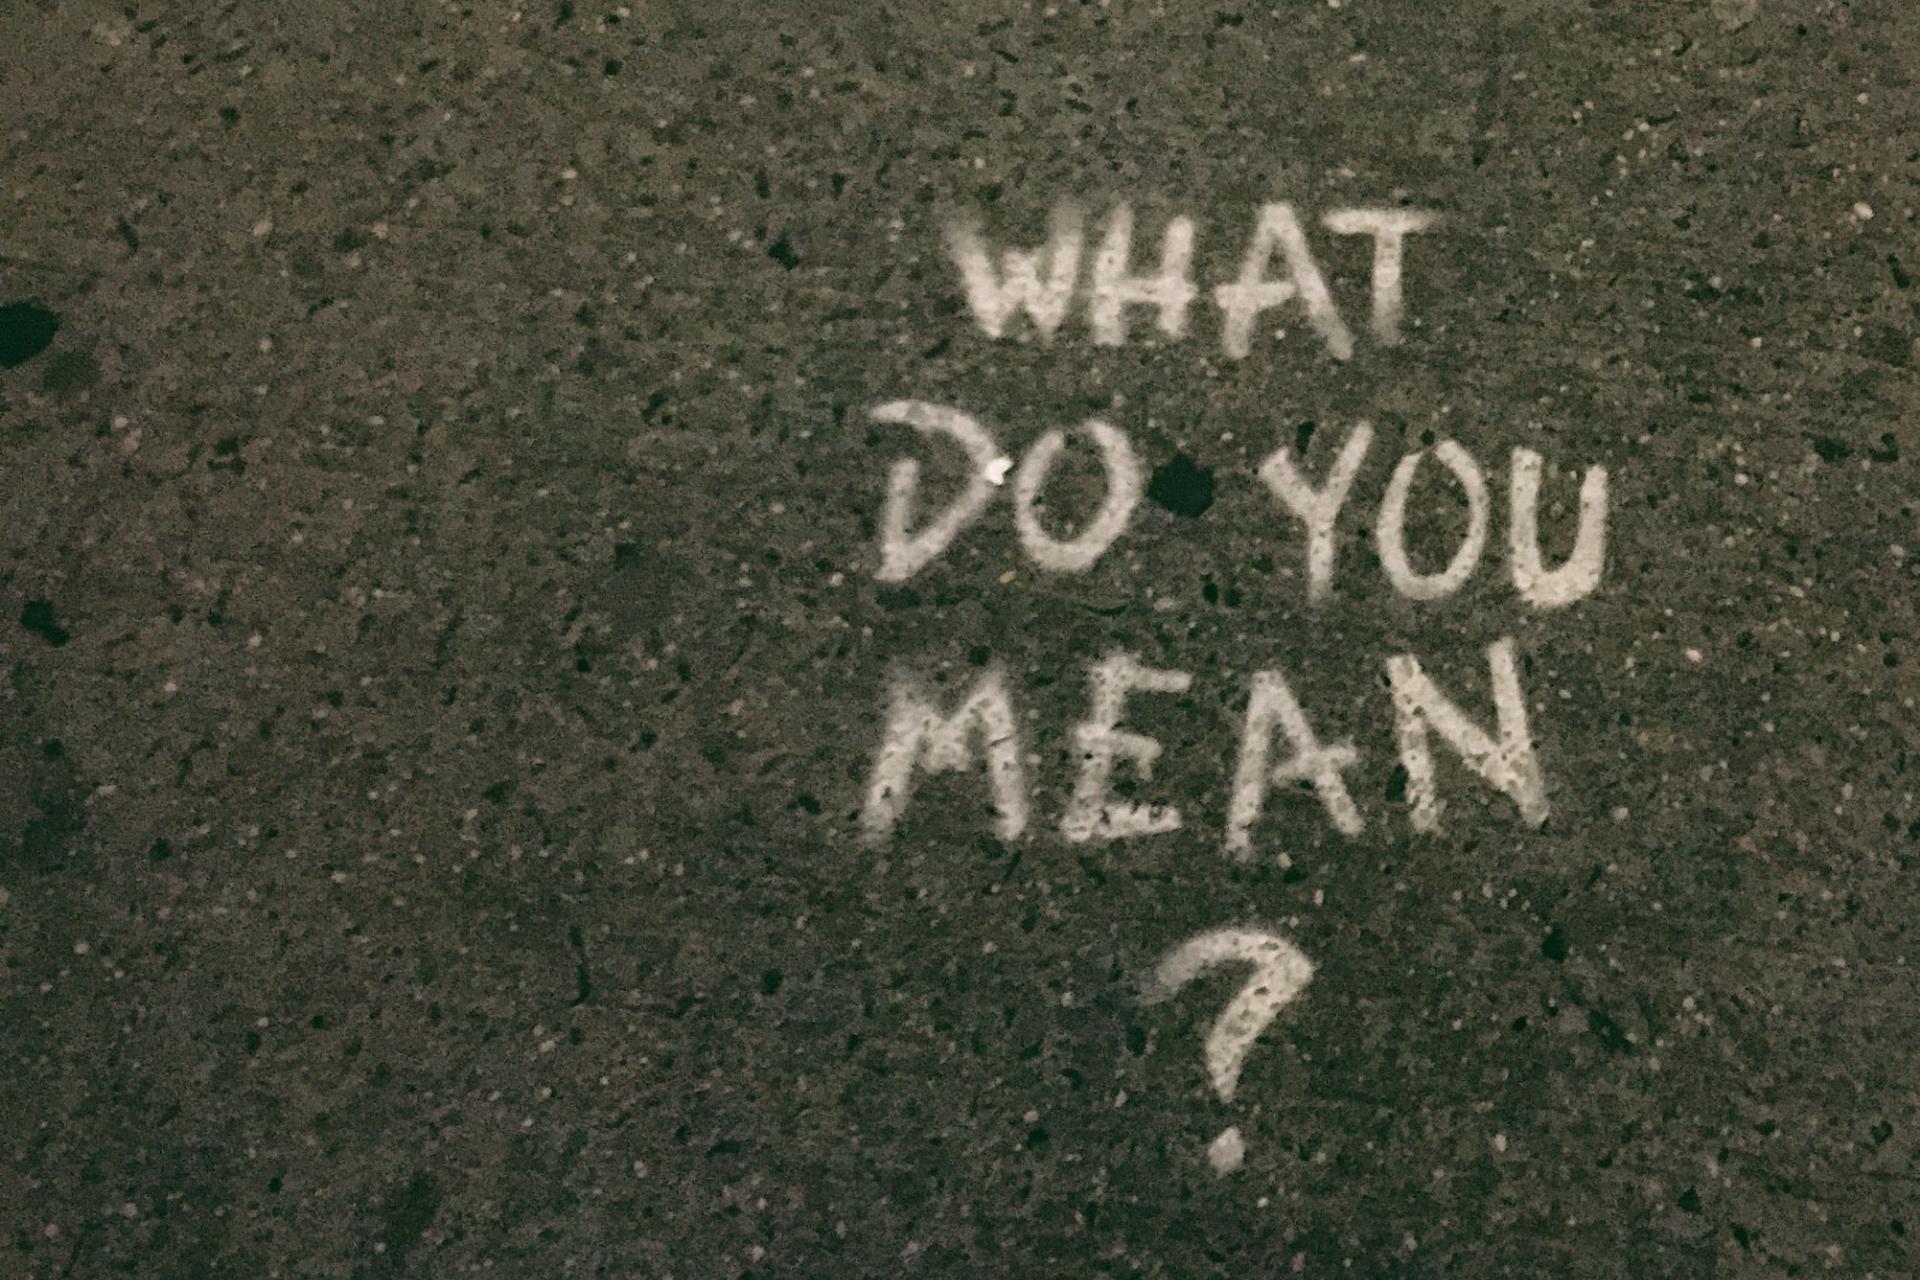  A qué te refieres? en inglés con el signo de interrogación escrito sobre asfalto con tiza